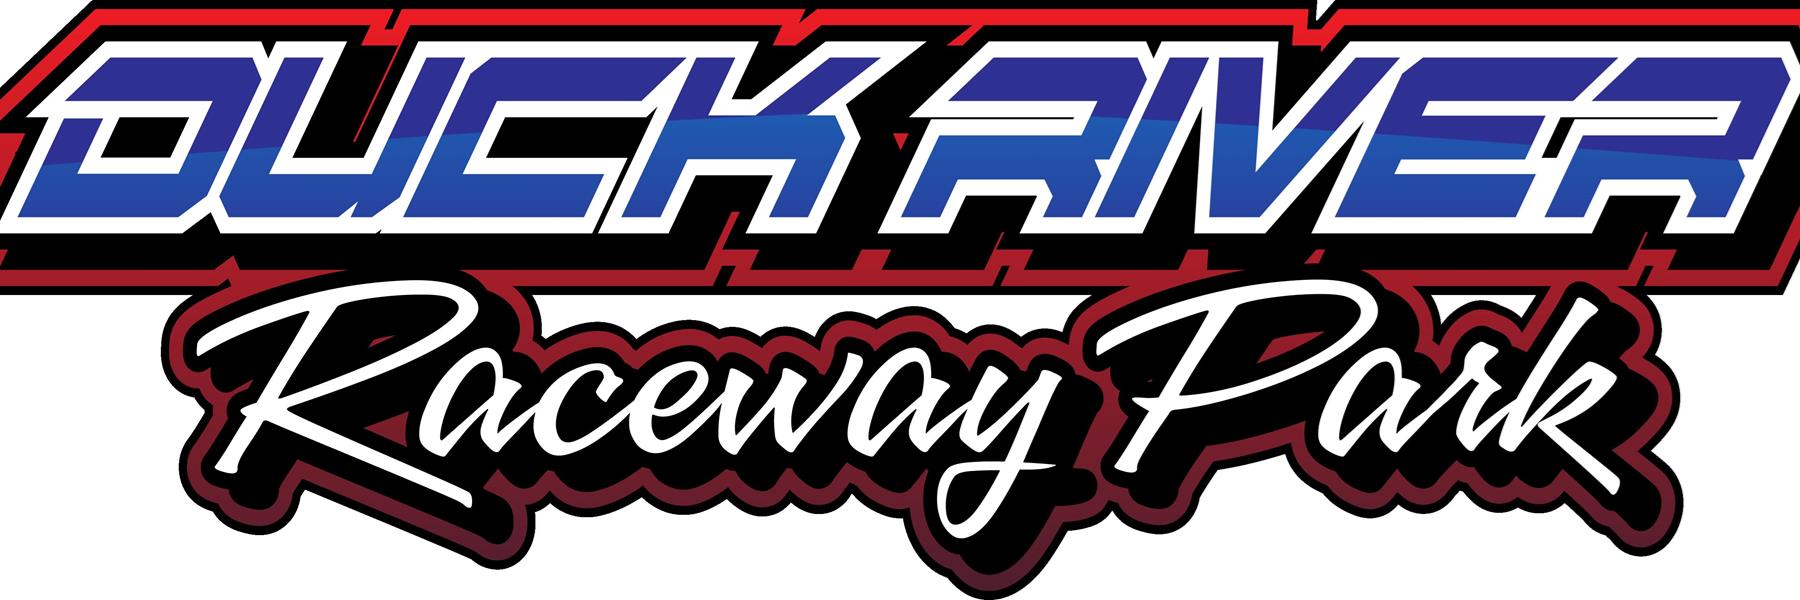 8/20/2022 - Duck River Raceway Park